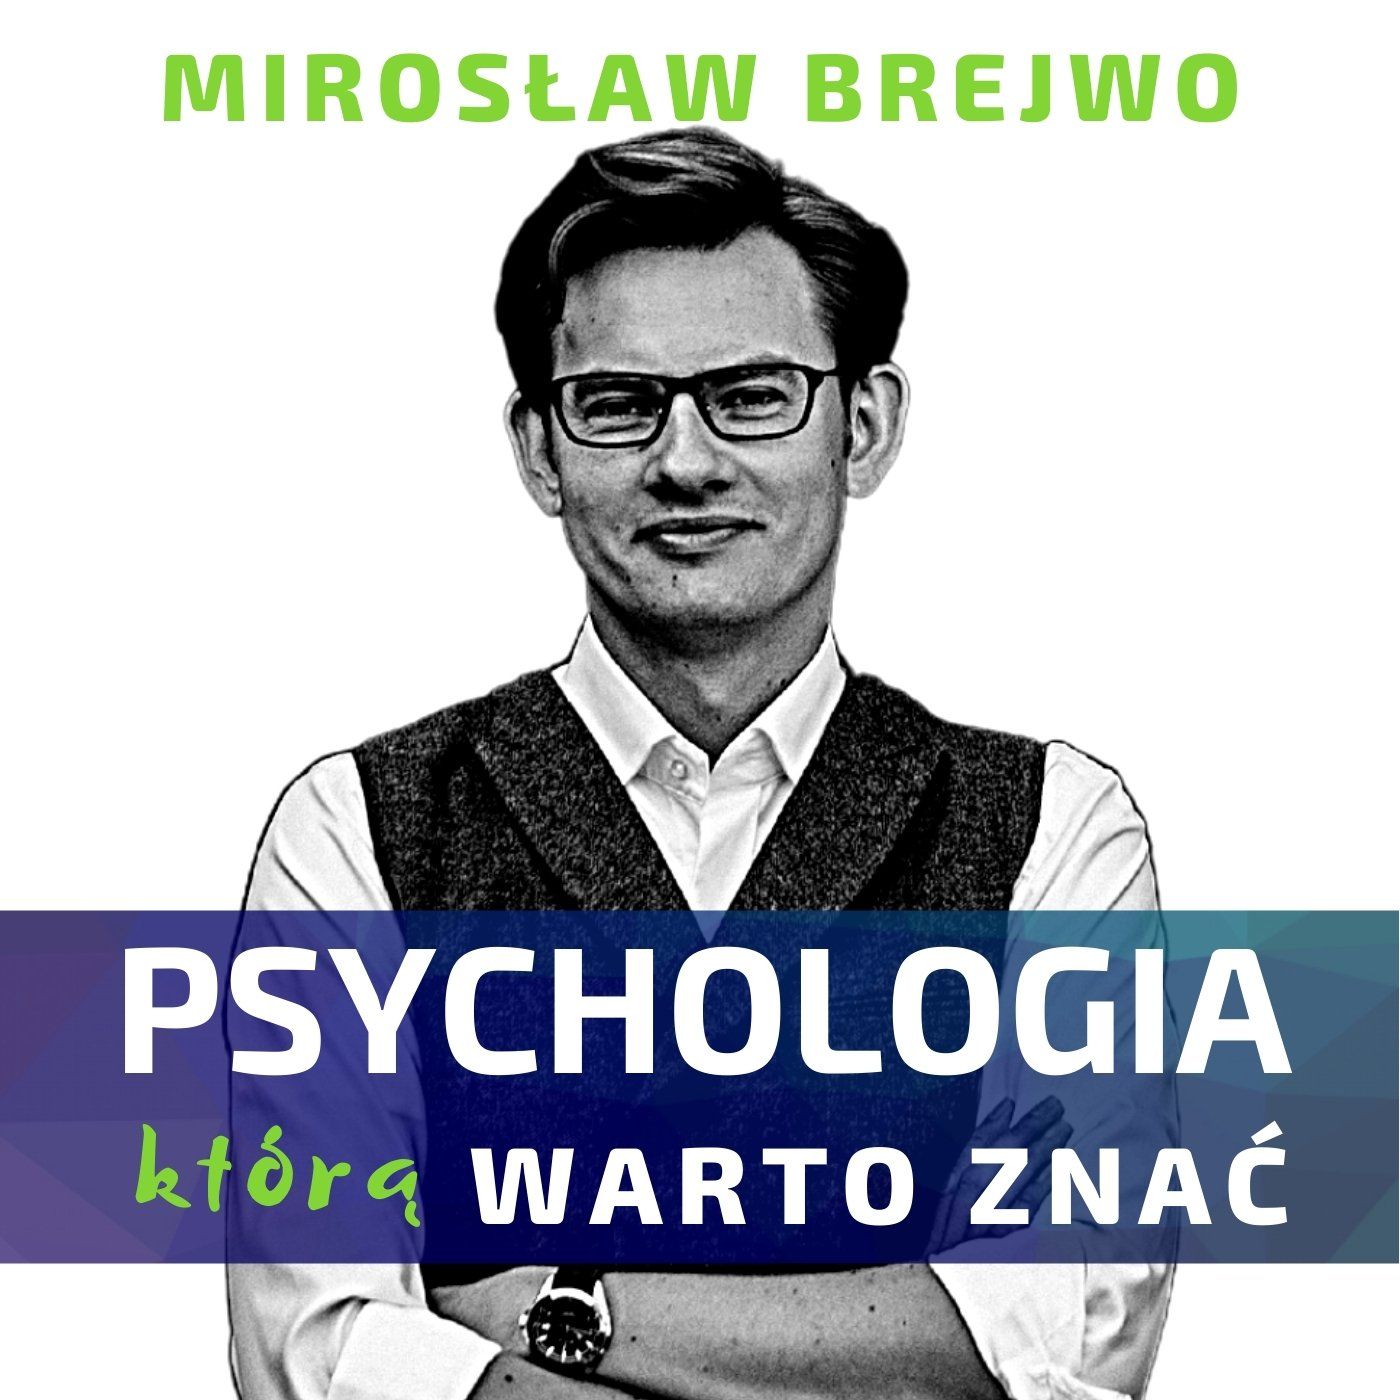 Mirosław Brejwo